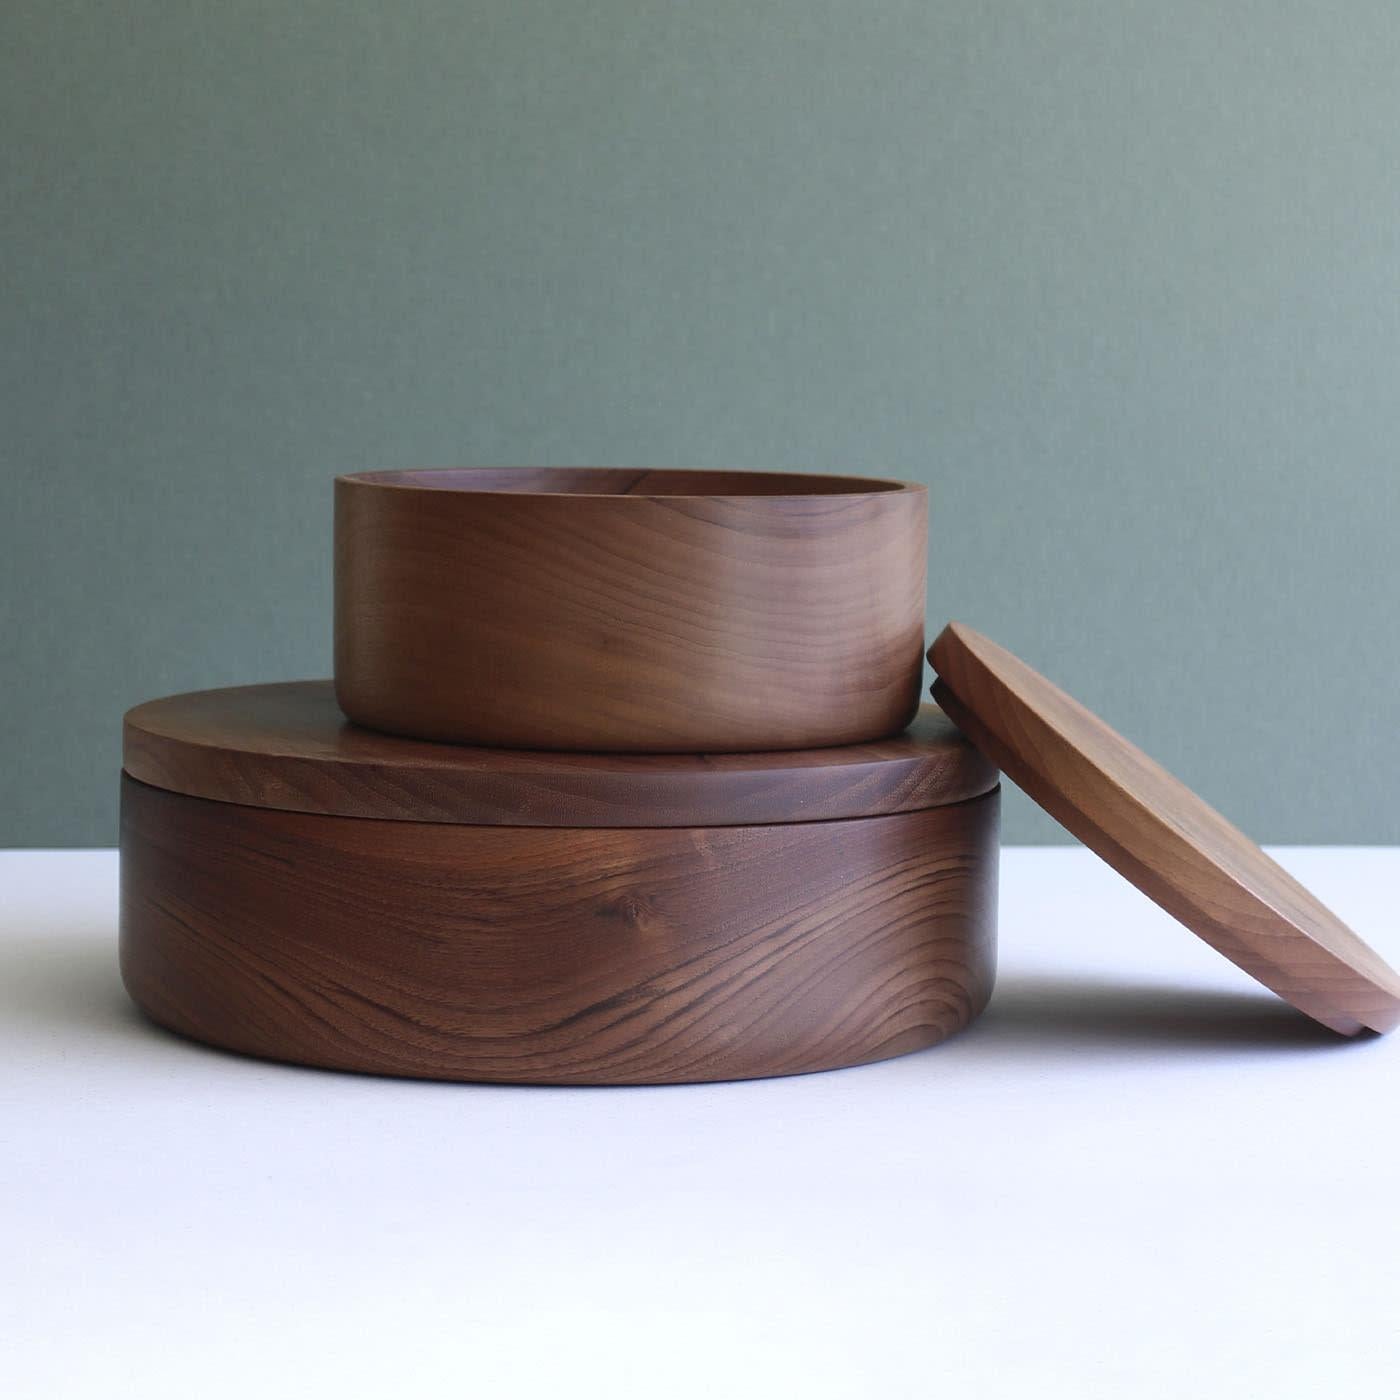 Diese handgefertigte zylindrische Schachtel aus massivem Nussbaumholz ist ein idealer Aufbewahrungsort für kleine Tortillas und verfügt über einen flachen Deckel, der die minimalistische Silhouette und die schlichte Eleganz der Schachtel